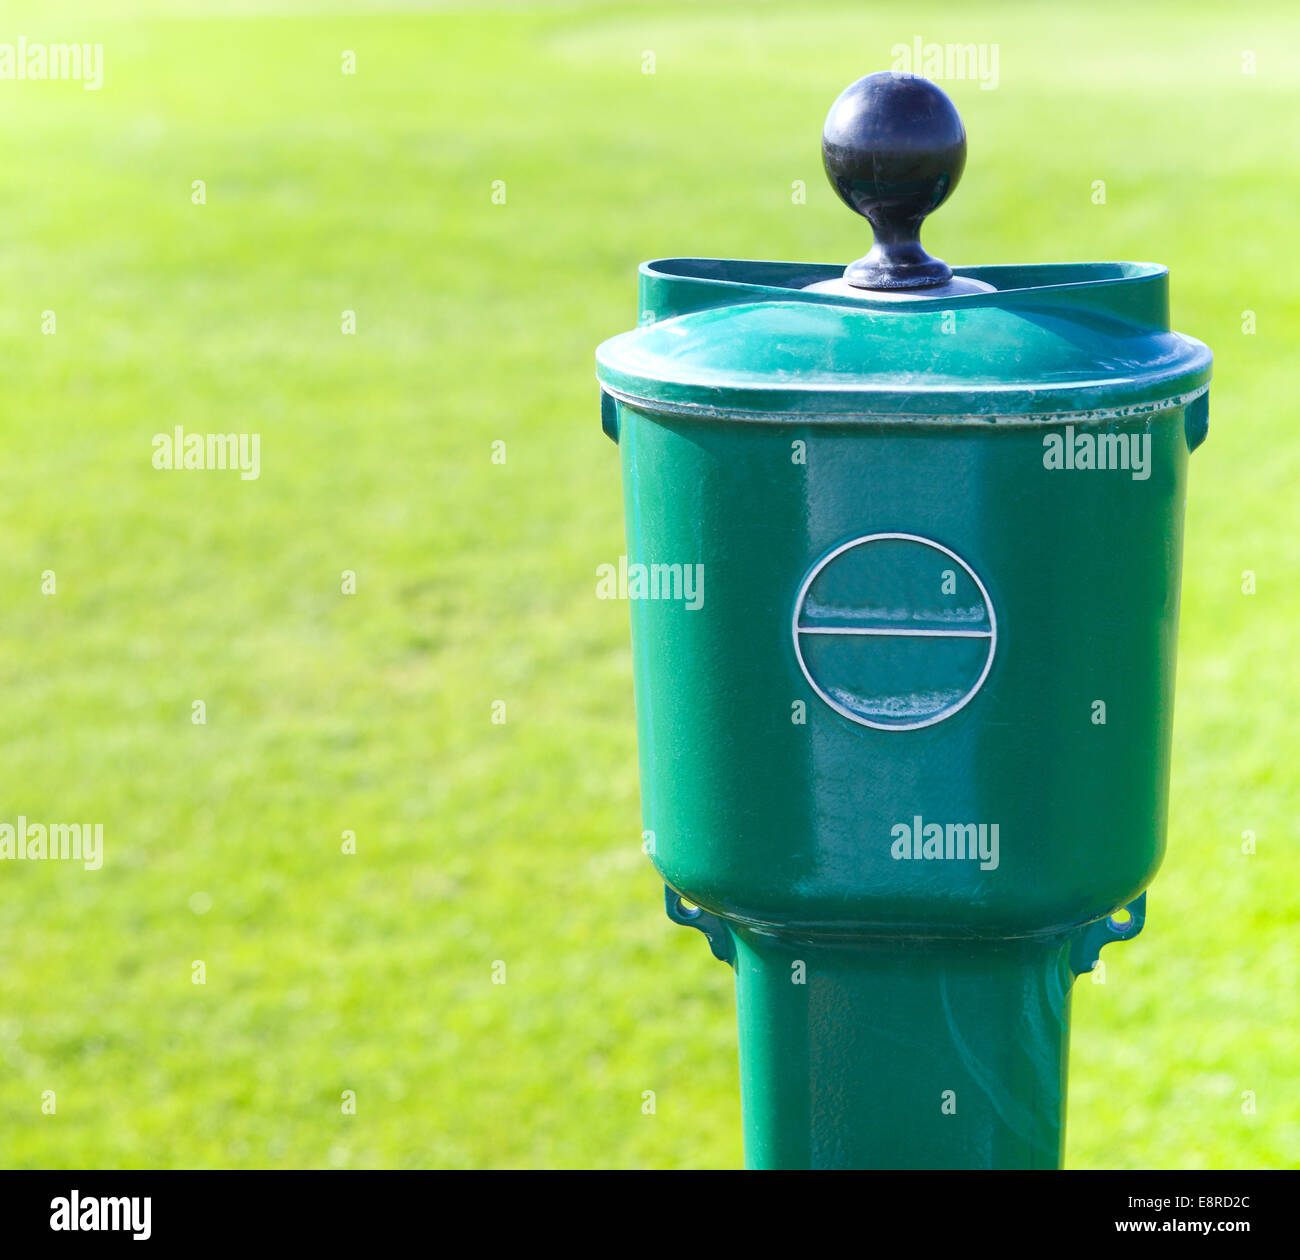 Golf Ball Waschmaschine Stockfotografie - Alamy